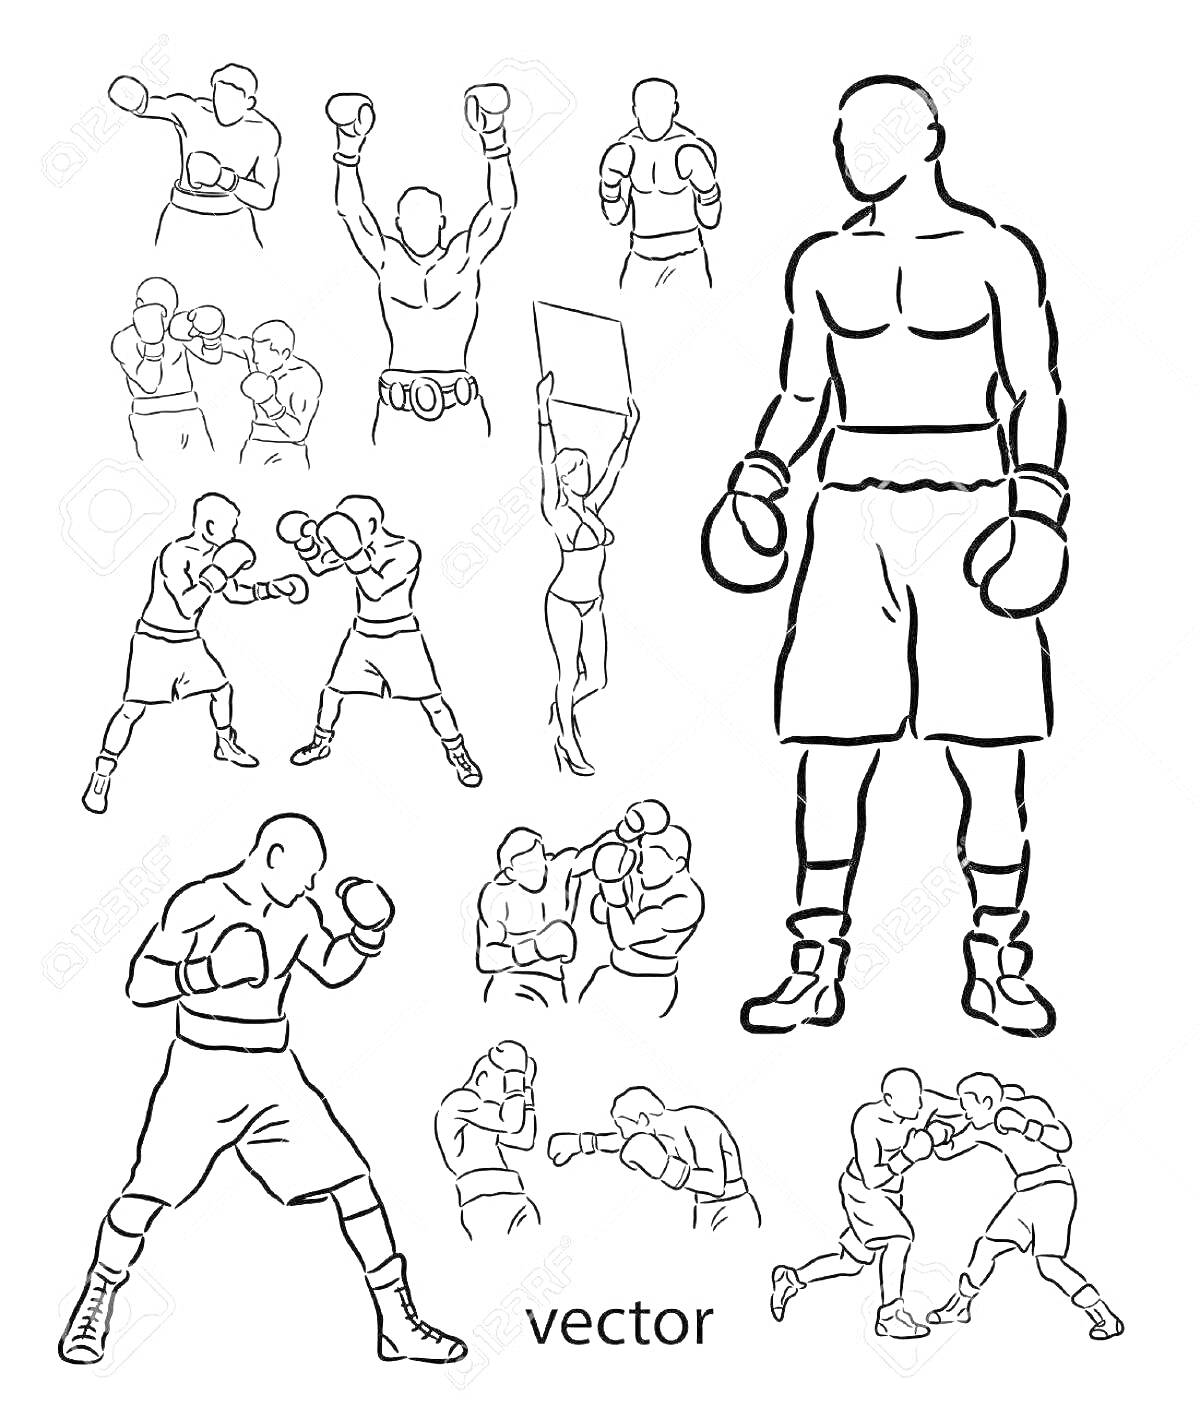 Боксеры в различных позах, ринг-герл с табличкой, большой боксёрский силуэт, пары бойцов в схватке